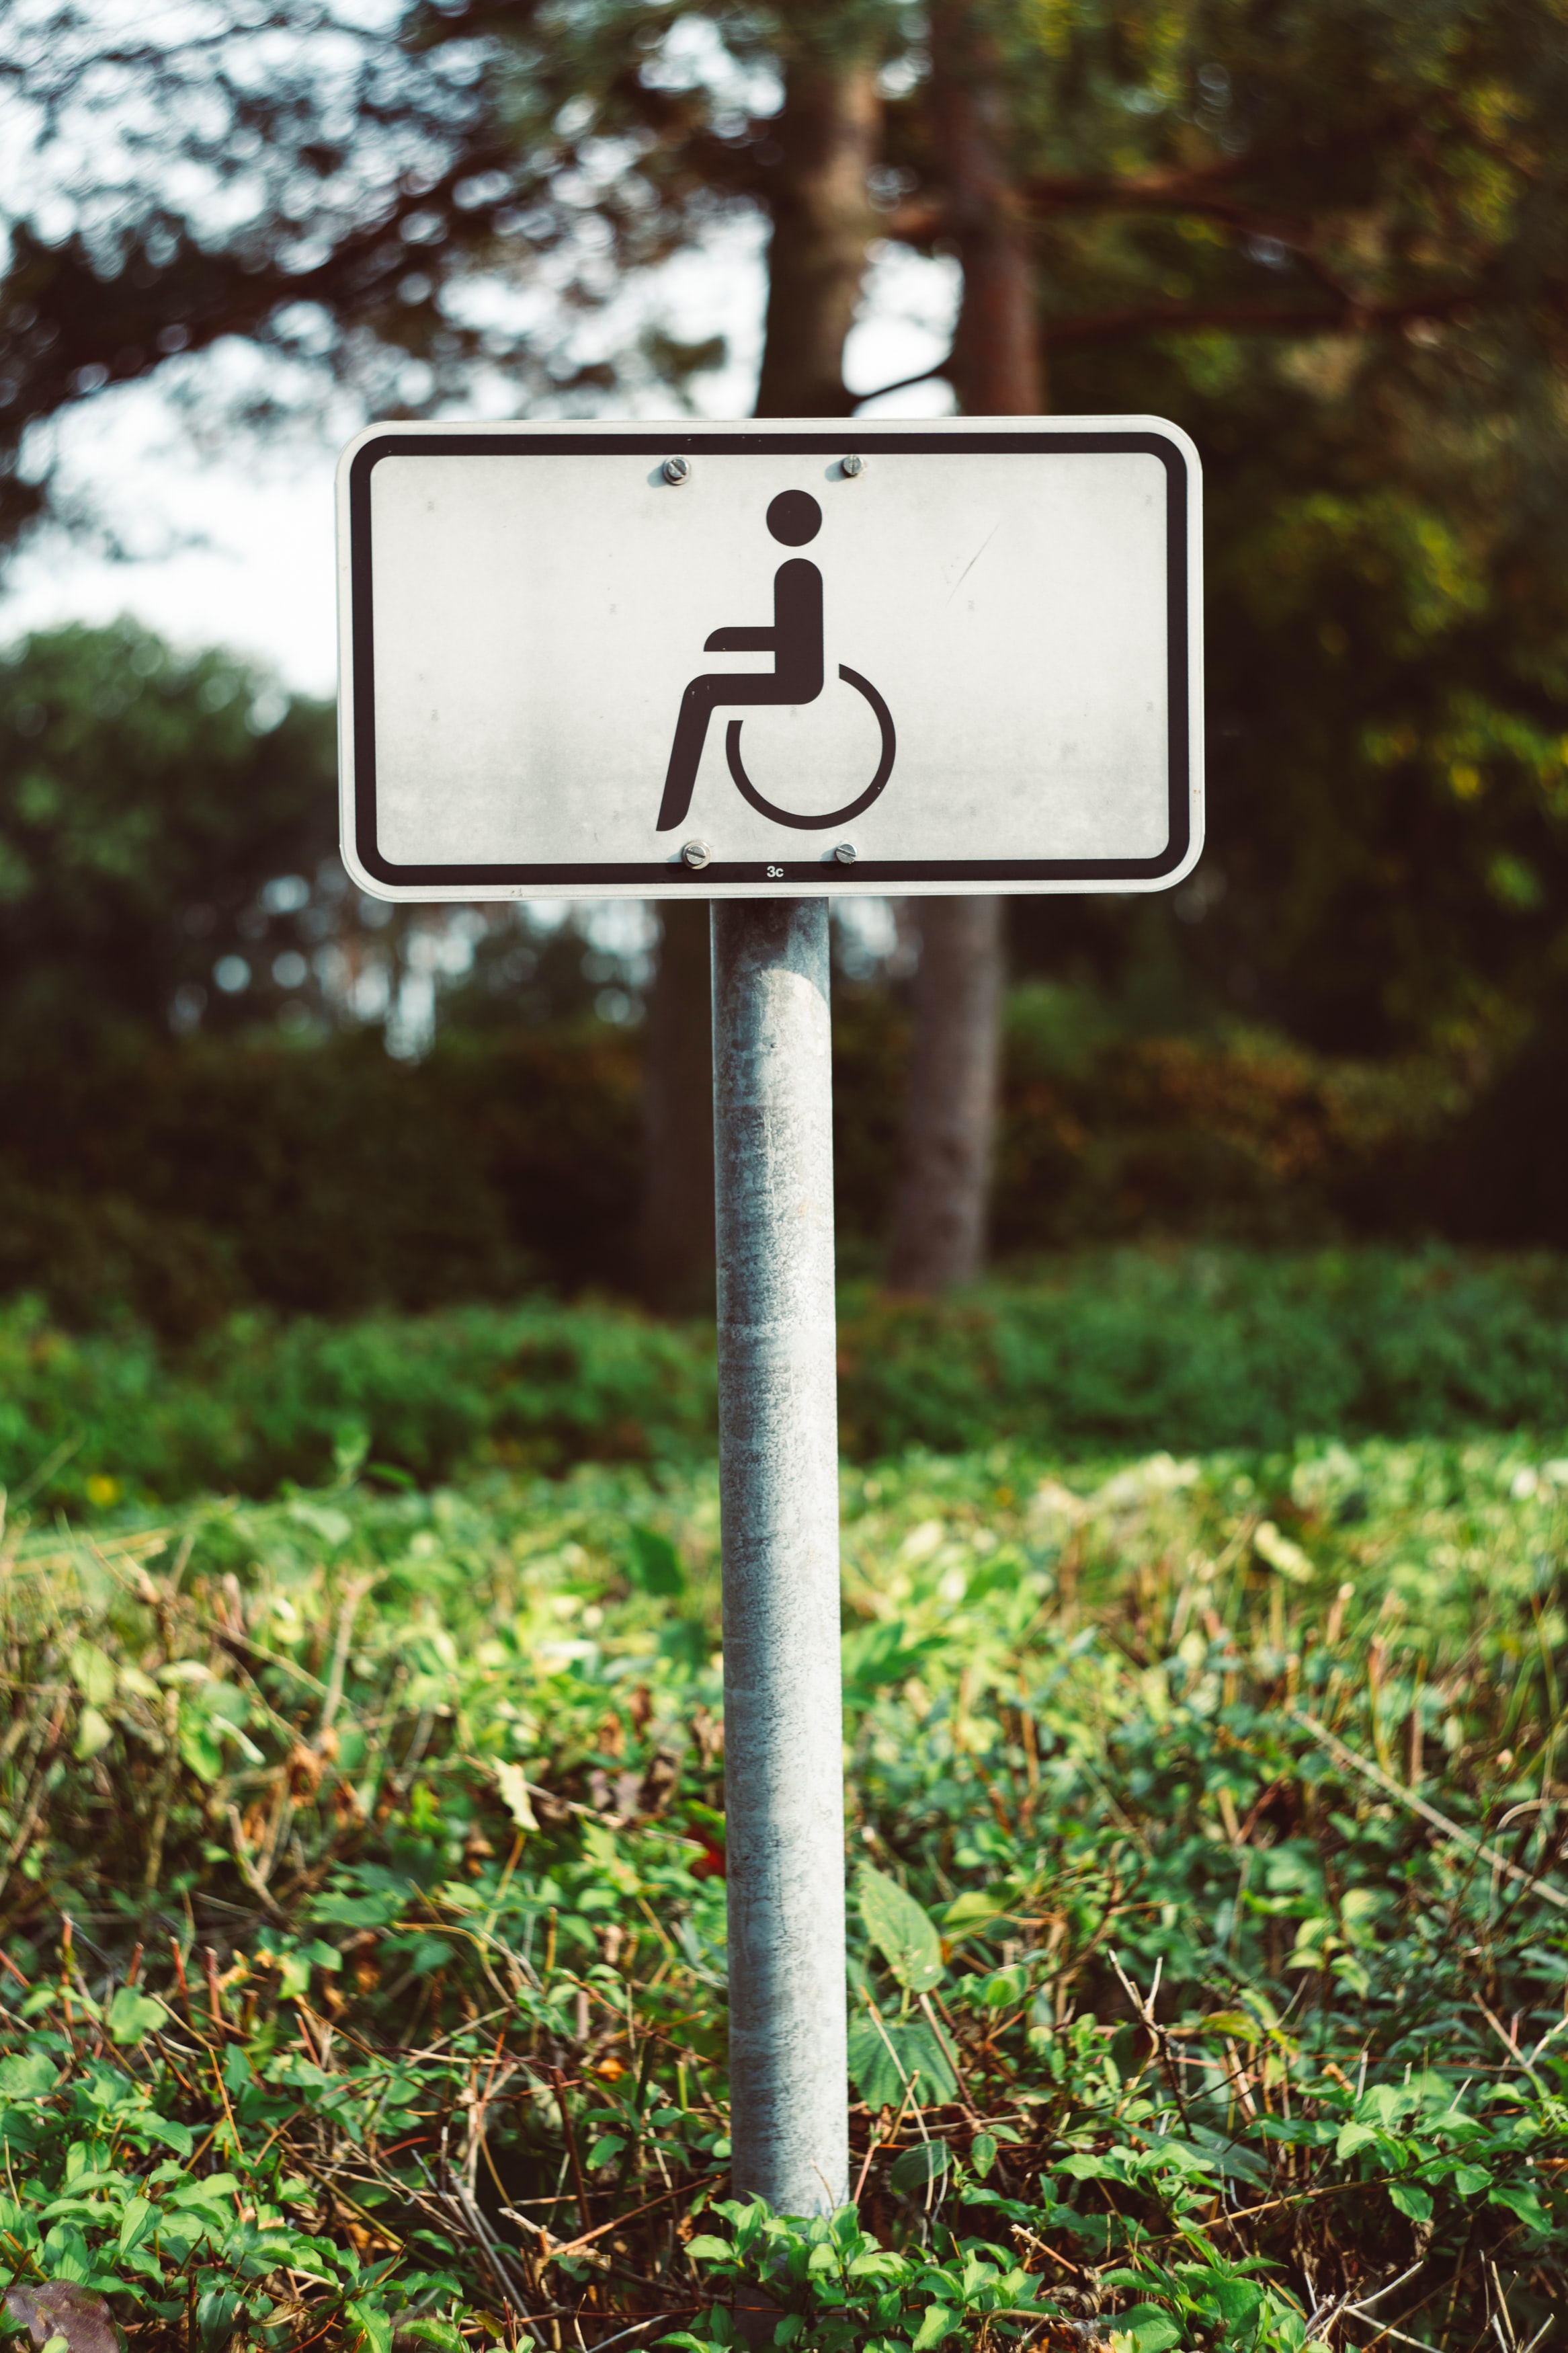 由于无障碍问题，使用轮椅的部长无法参加Cop26峰会;在全球范围内，新冠肺炎对就业的影响将比预期的更严重